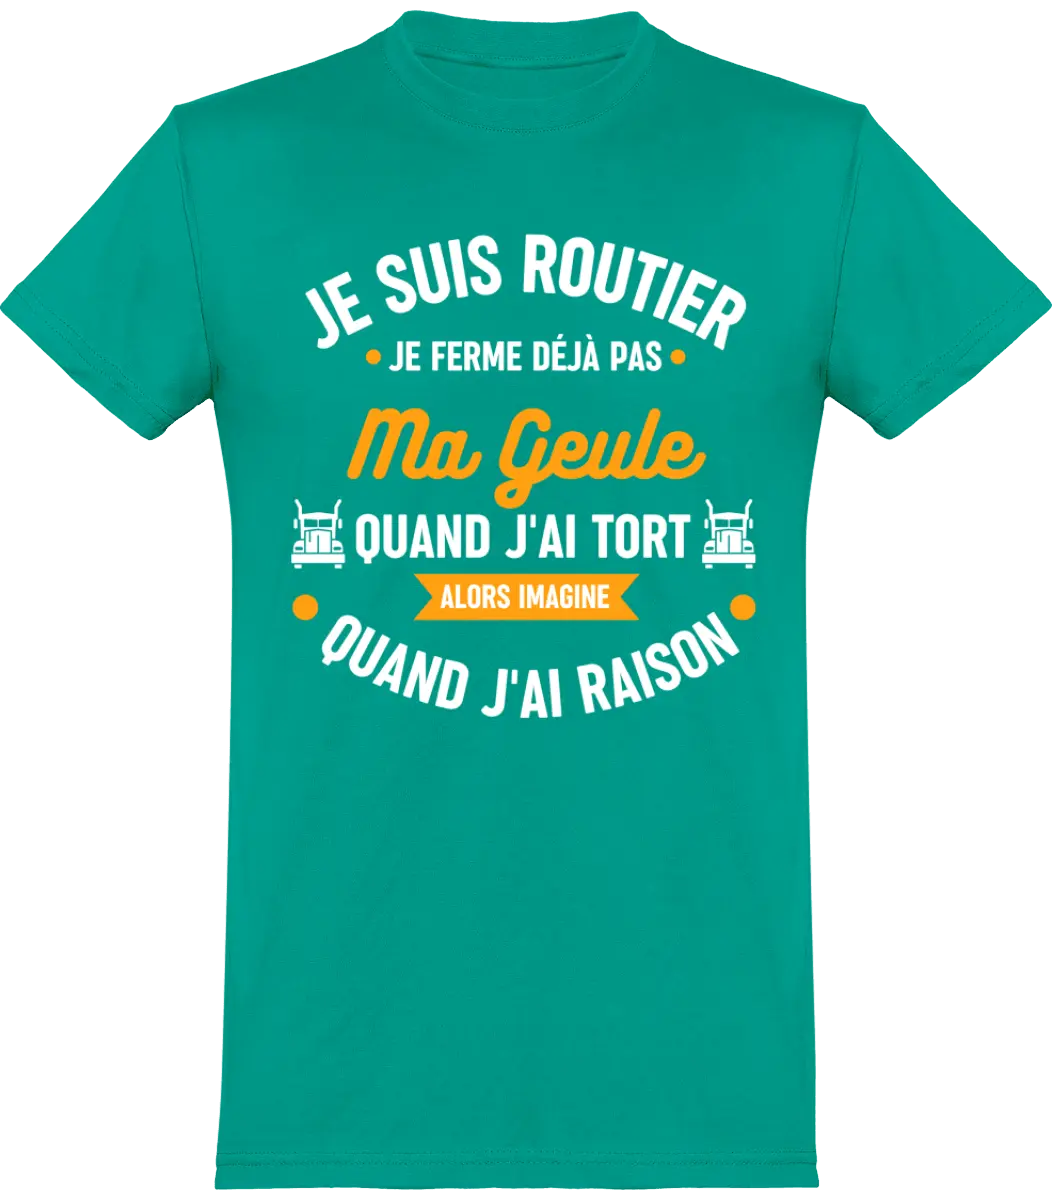 T-shirt Routier "Je suis routier je ferme déjà pas quand j'ai tort alors imagine quand j'ai raison" Mixte - French Humour